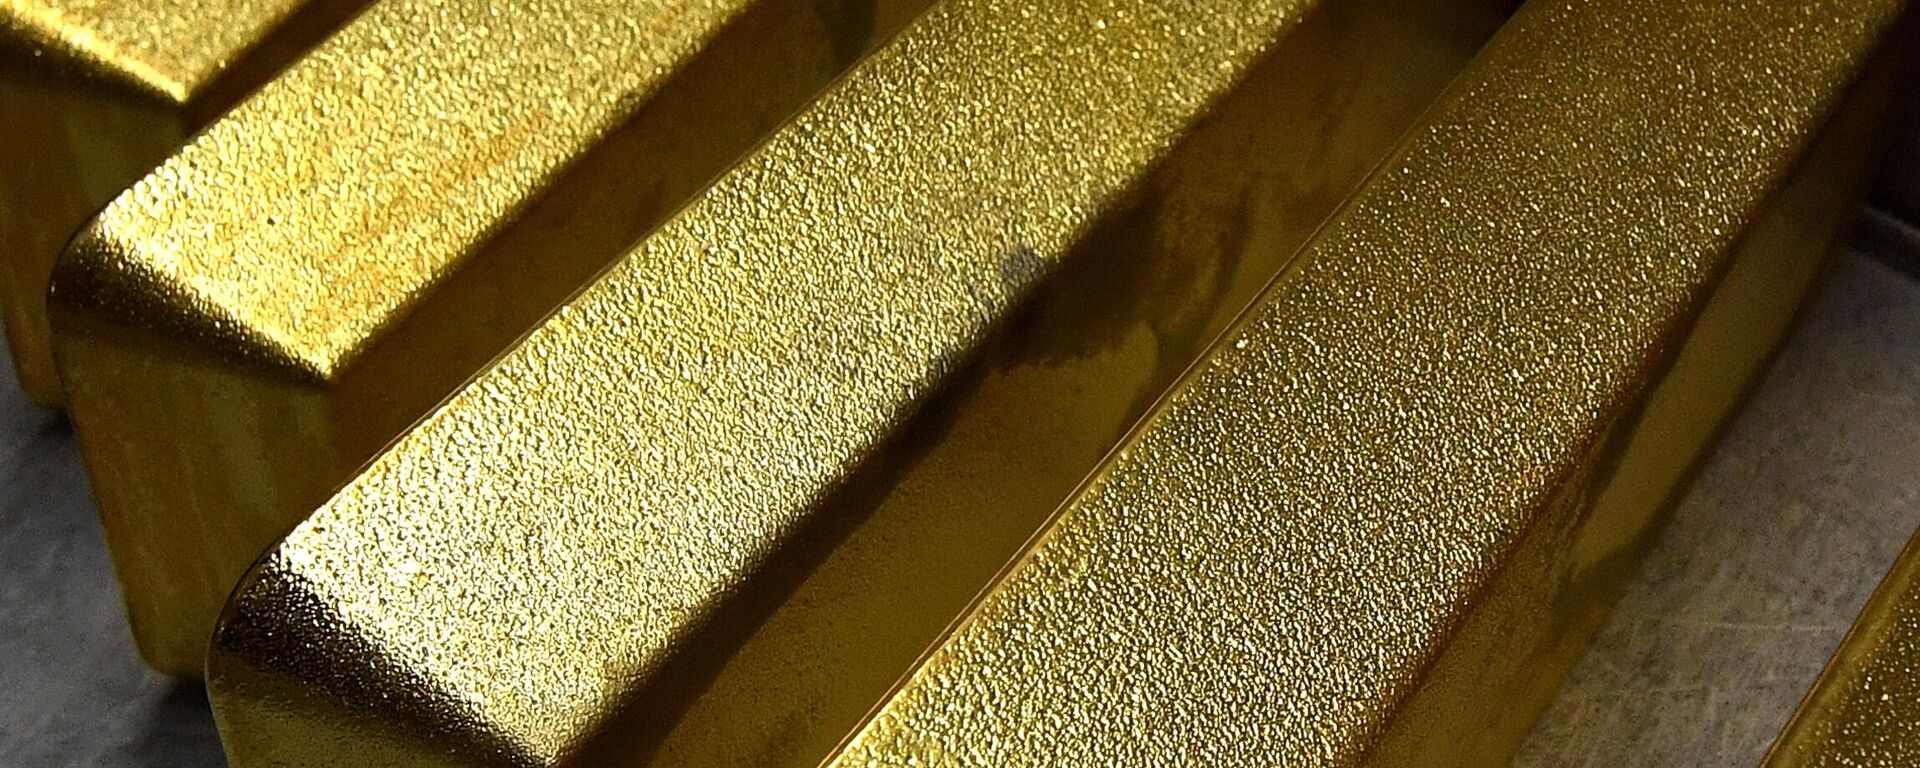 Lingotes de oro, imagen referencial - Sputnik Mundo, 1920, 27.06.2022